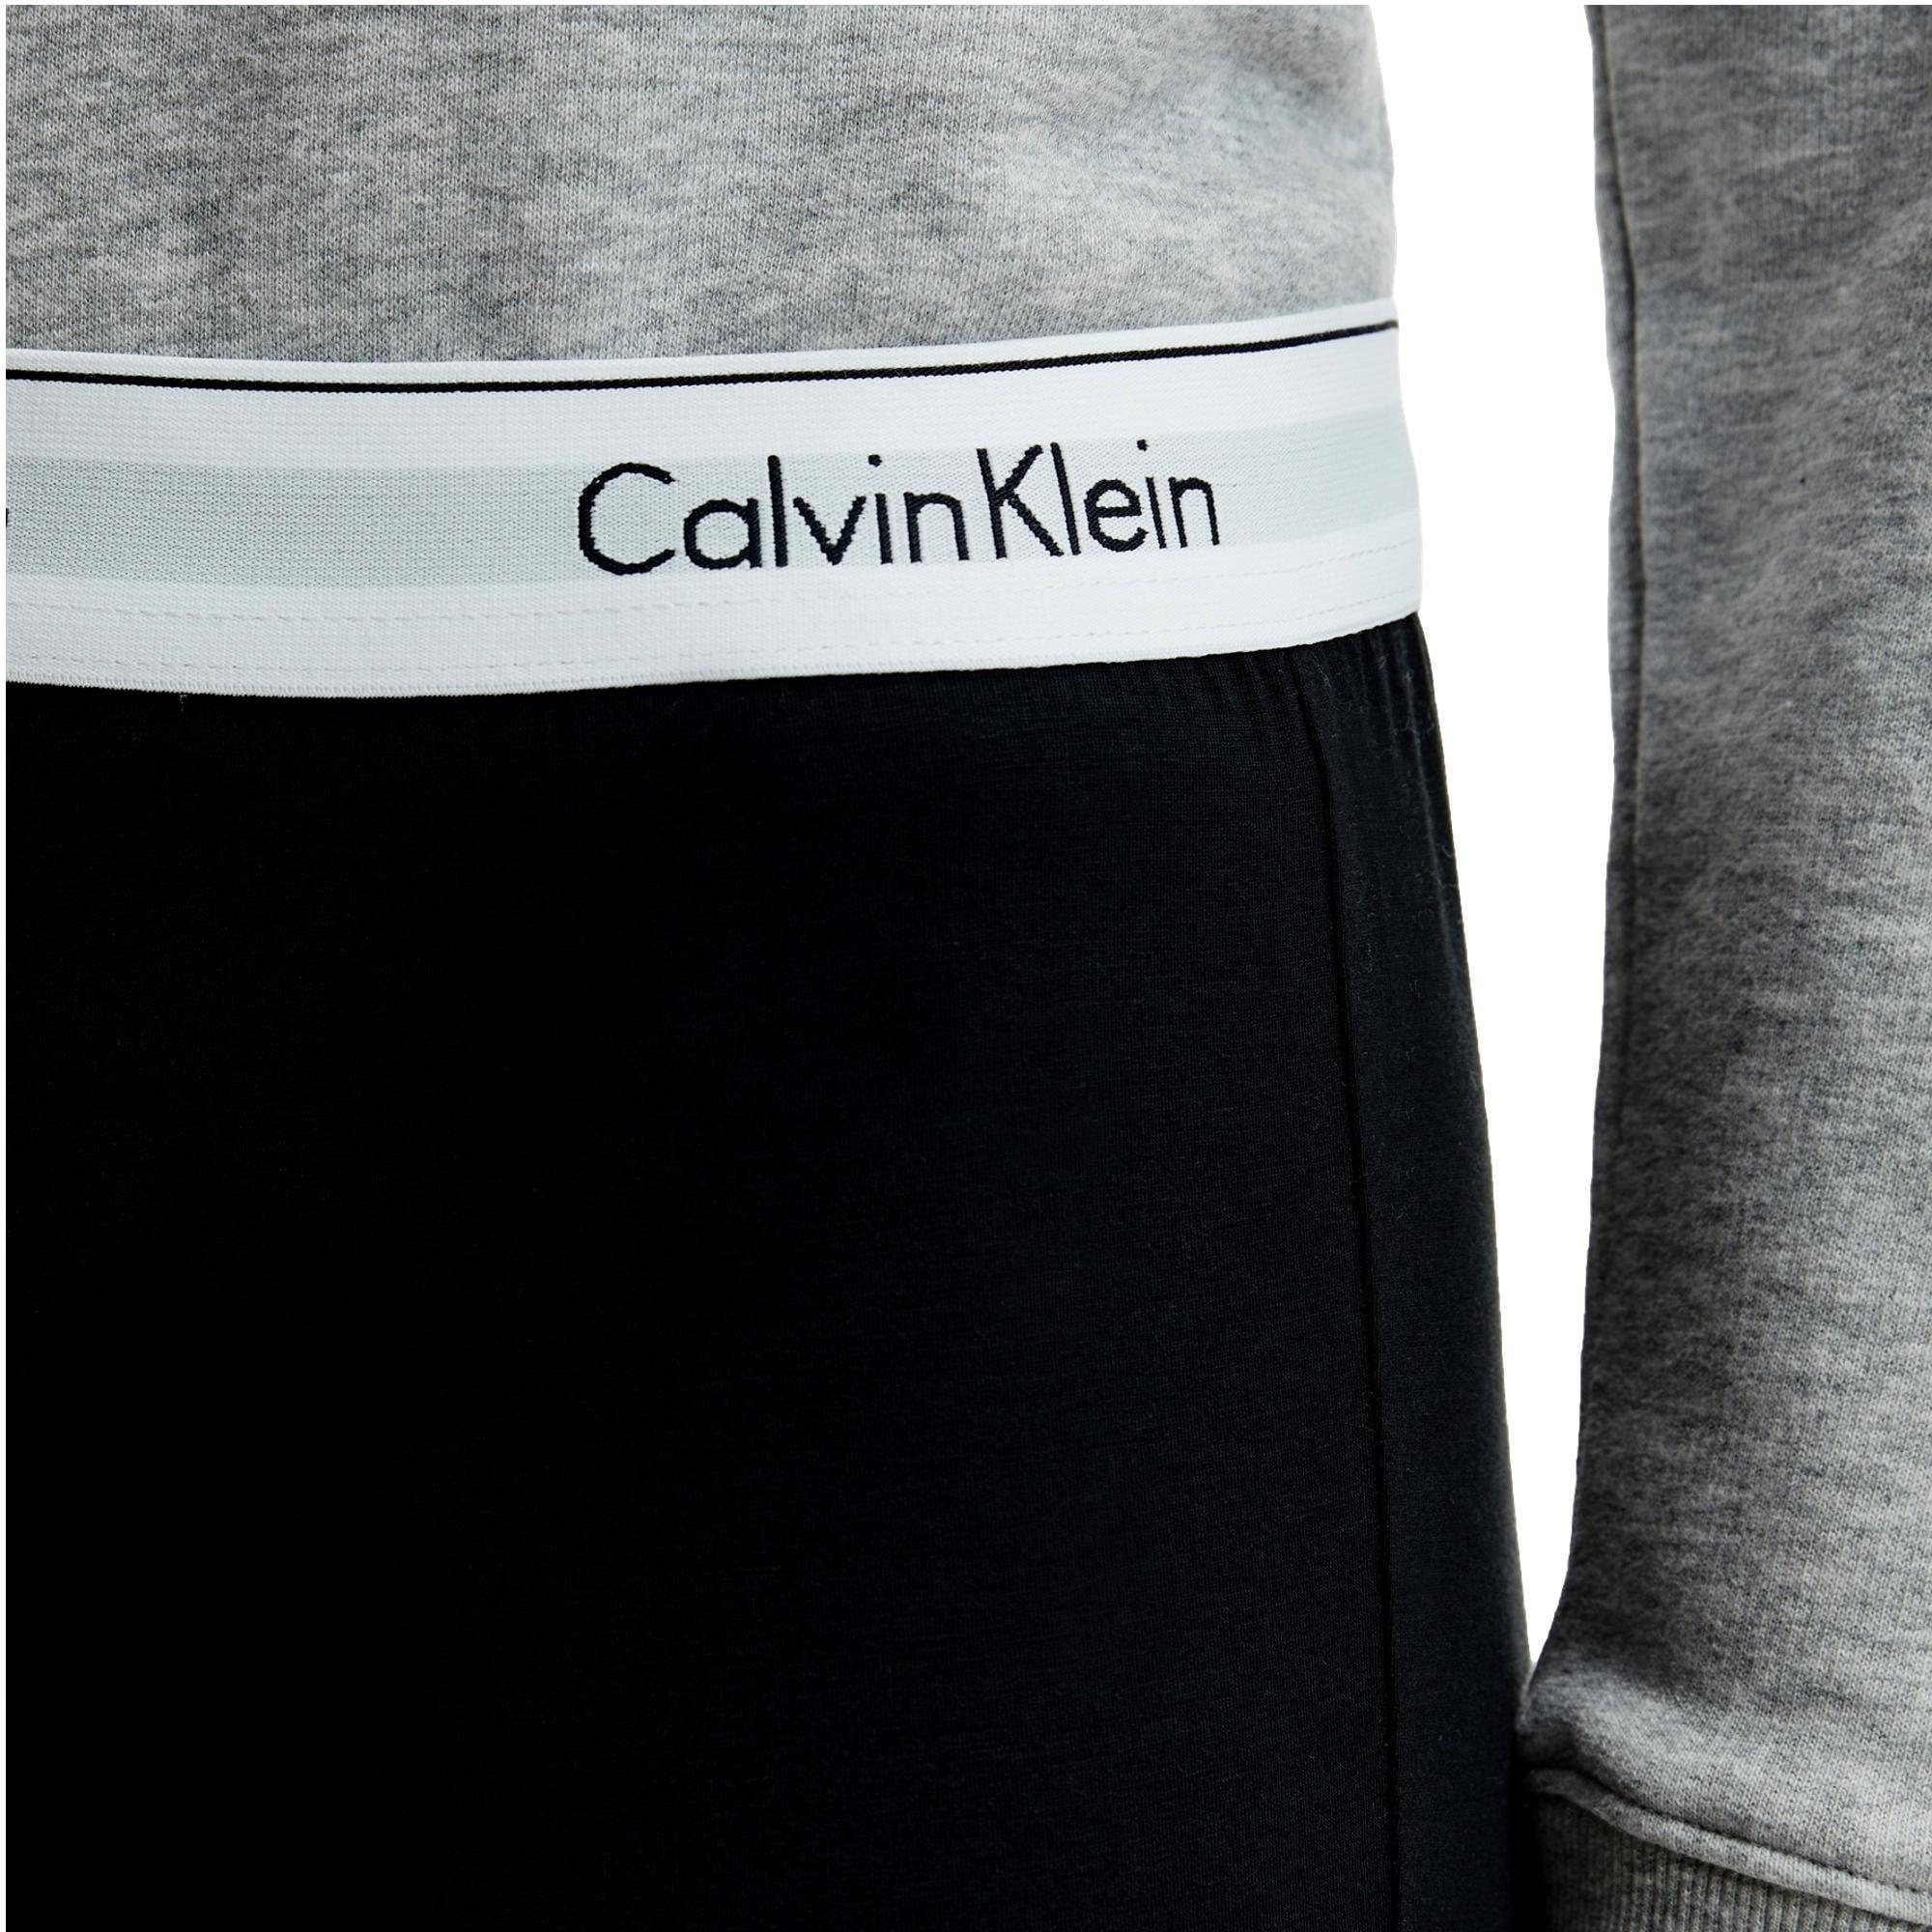 Calvin Klein Modern Cotton Bralette Lift - Grey - Utility Bear